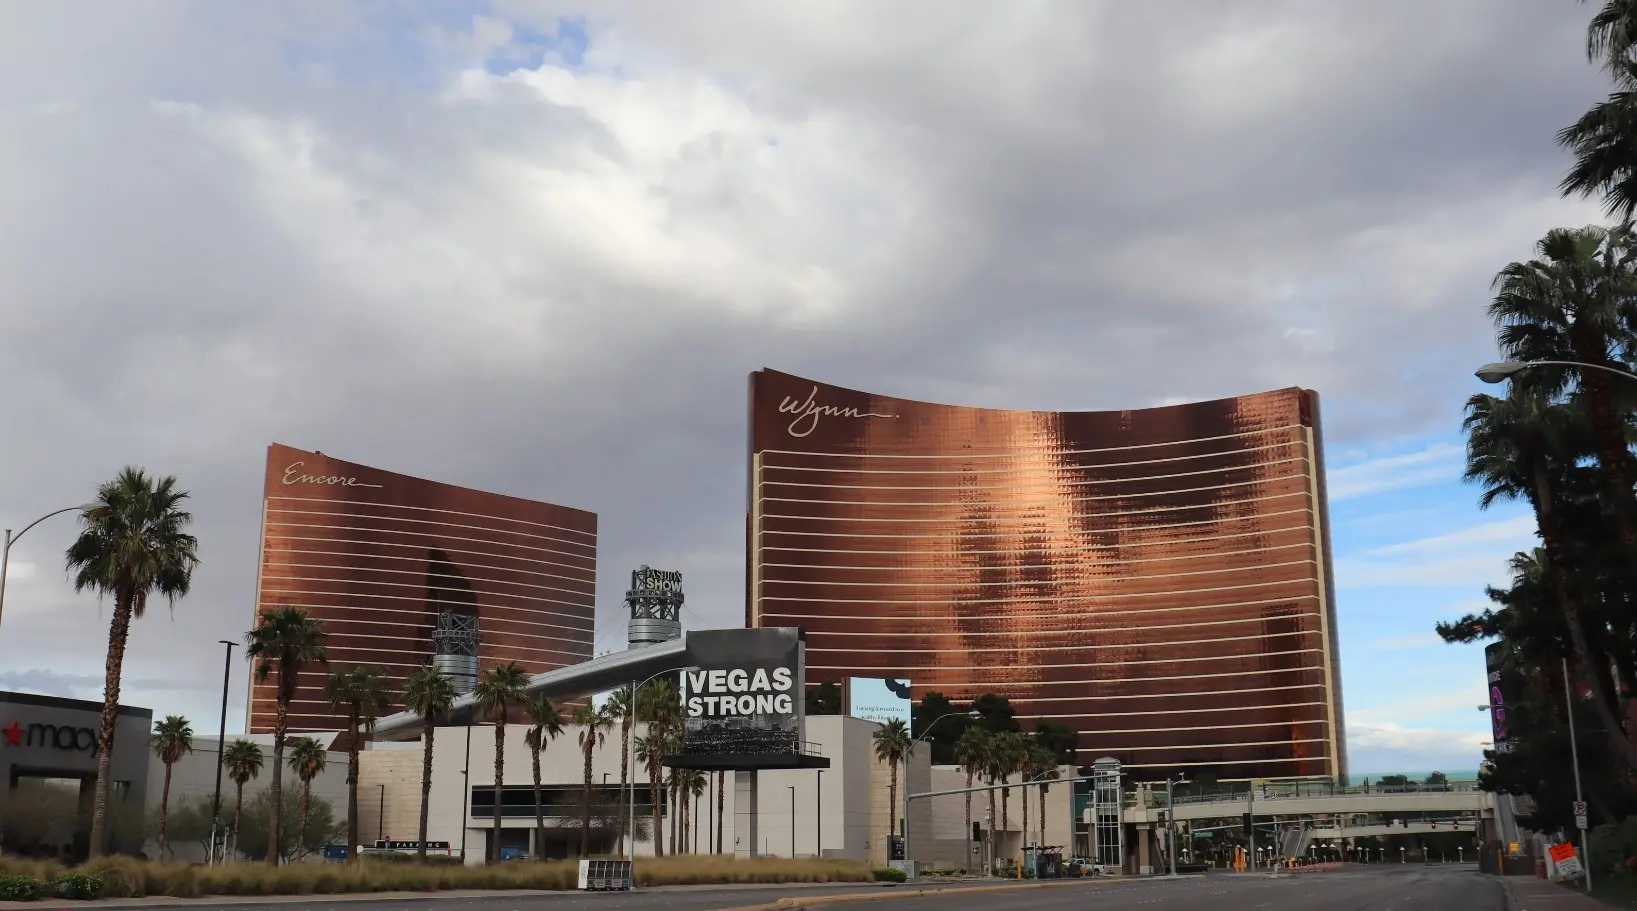 Wynn Las Vegas jogi csatara nez szembe a vedono tragikus jpg